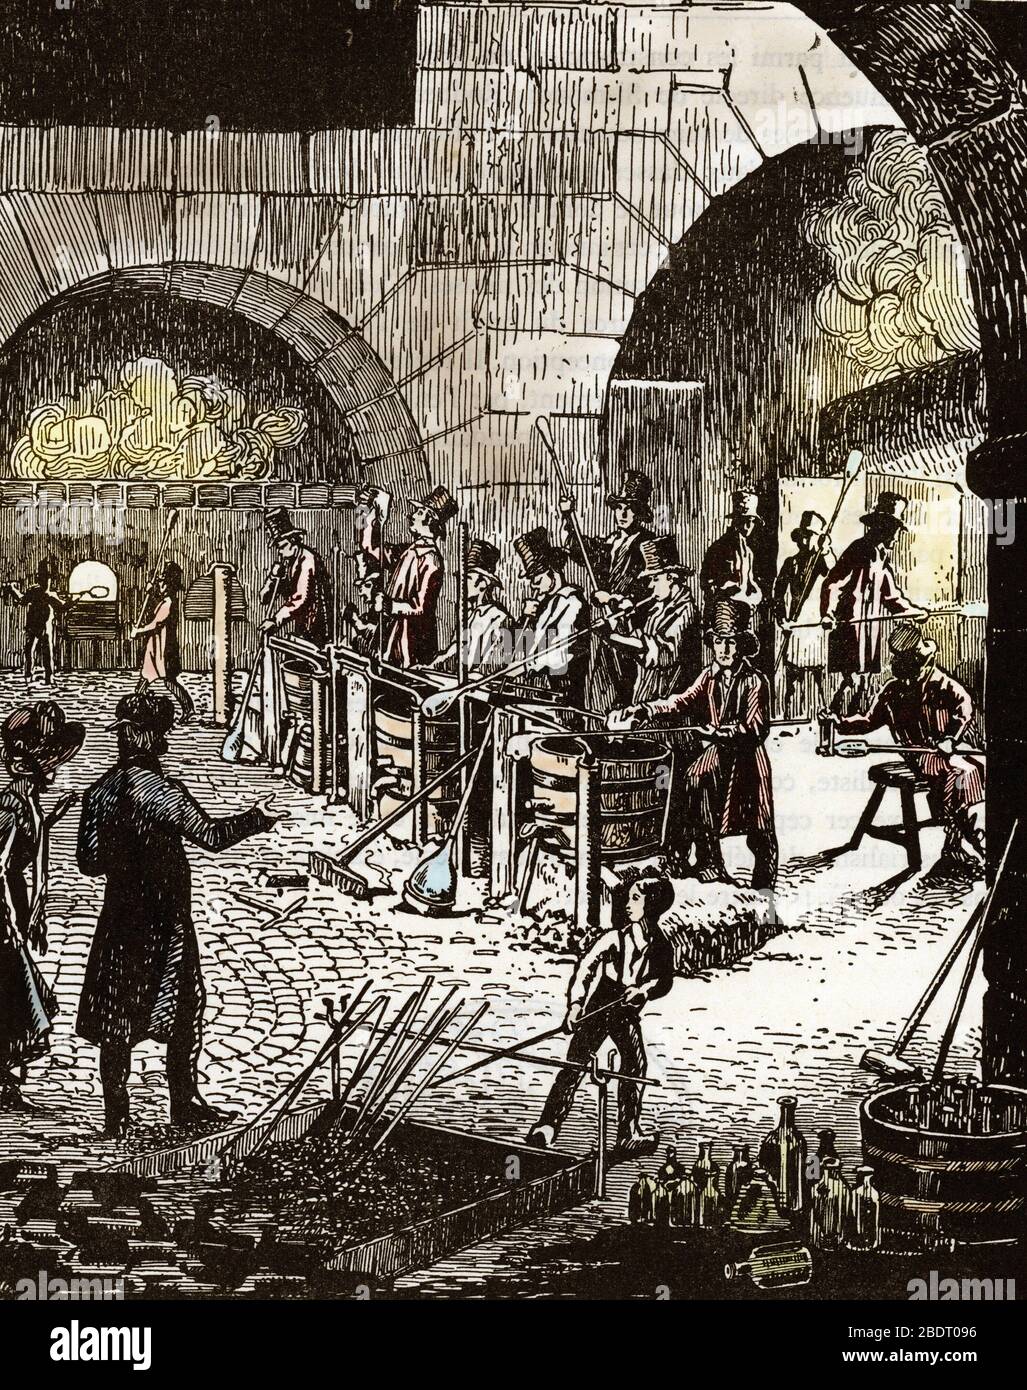 'Une verrerie avec des souffeurs de verre, France, 1820' (production de verrerie : souffleurs de verre dans un atelier de verre, France 1820 CA) Gravure 19 cen Banque D'Images